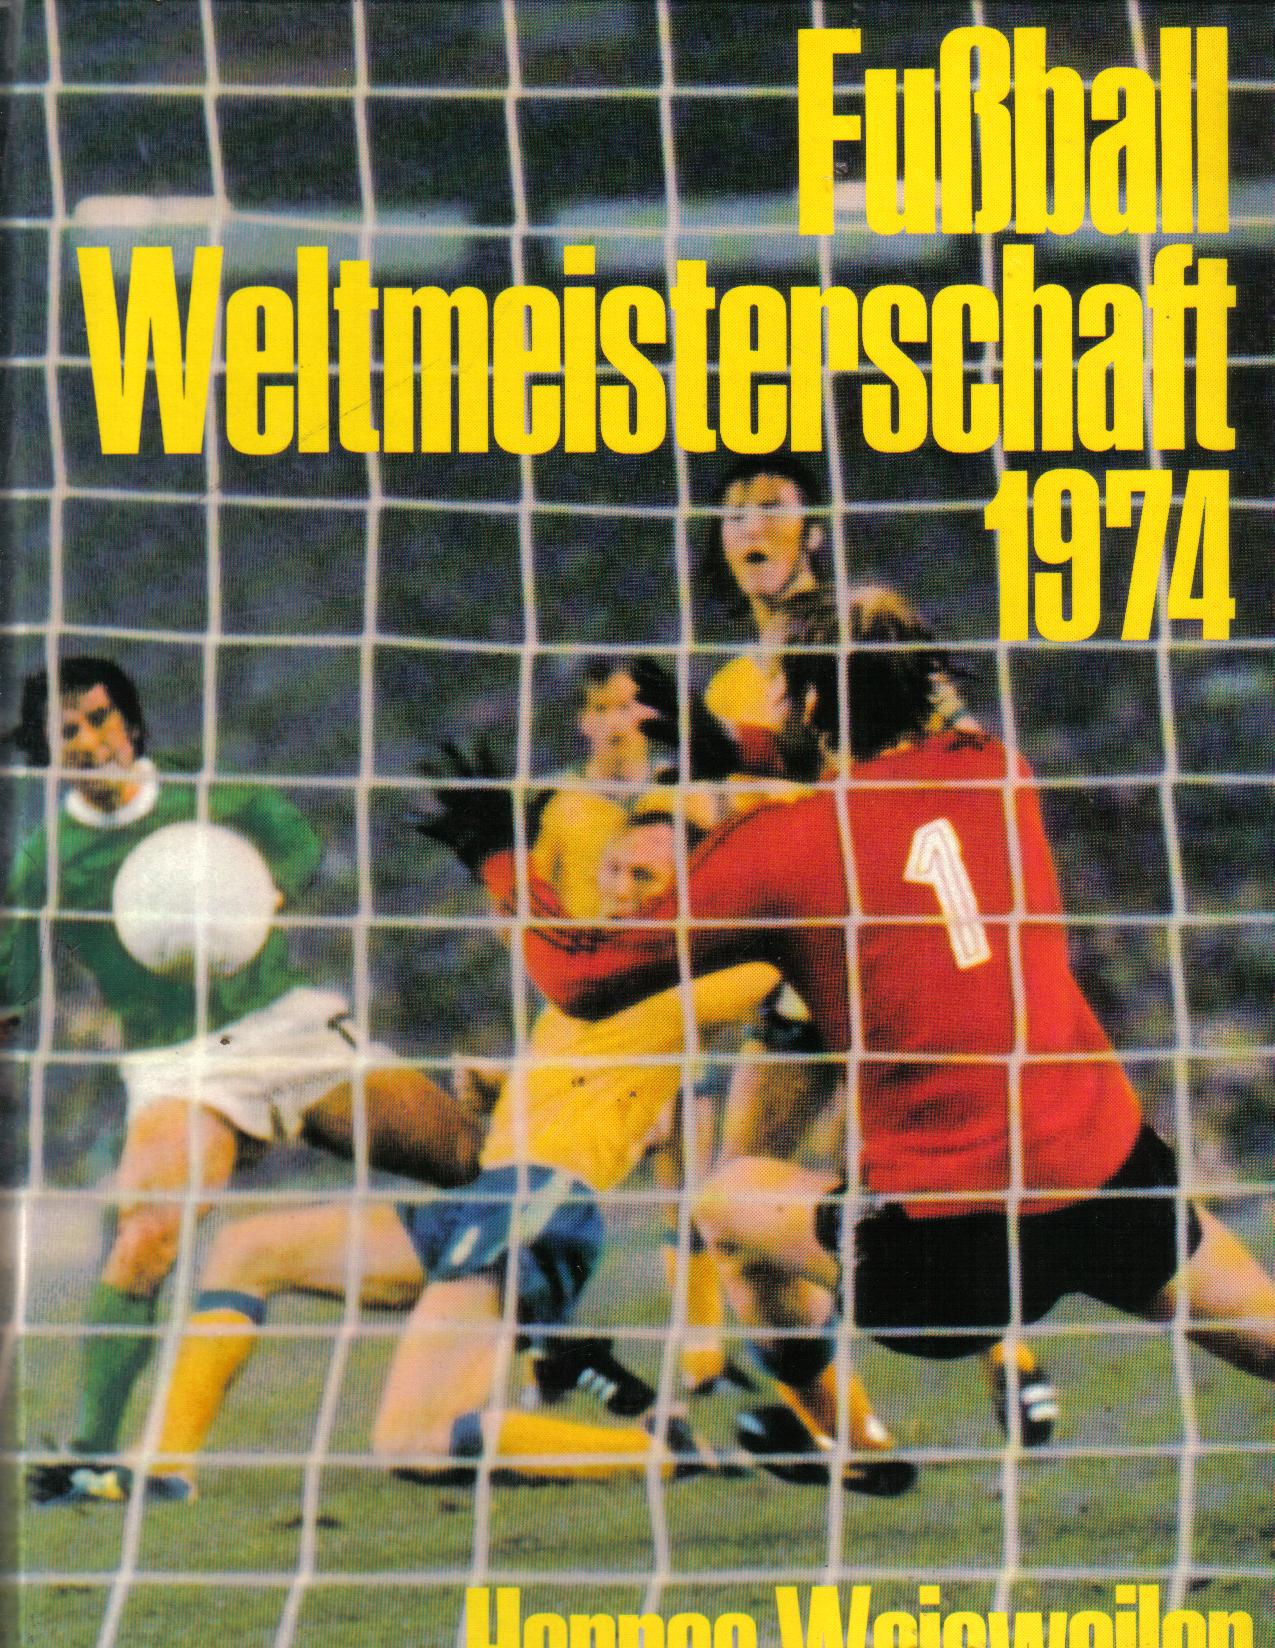 Fussball Fussball Weltmeisterschaft 1974 Weisweiler